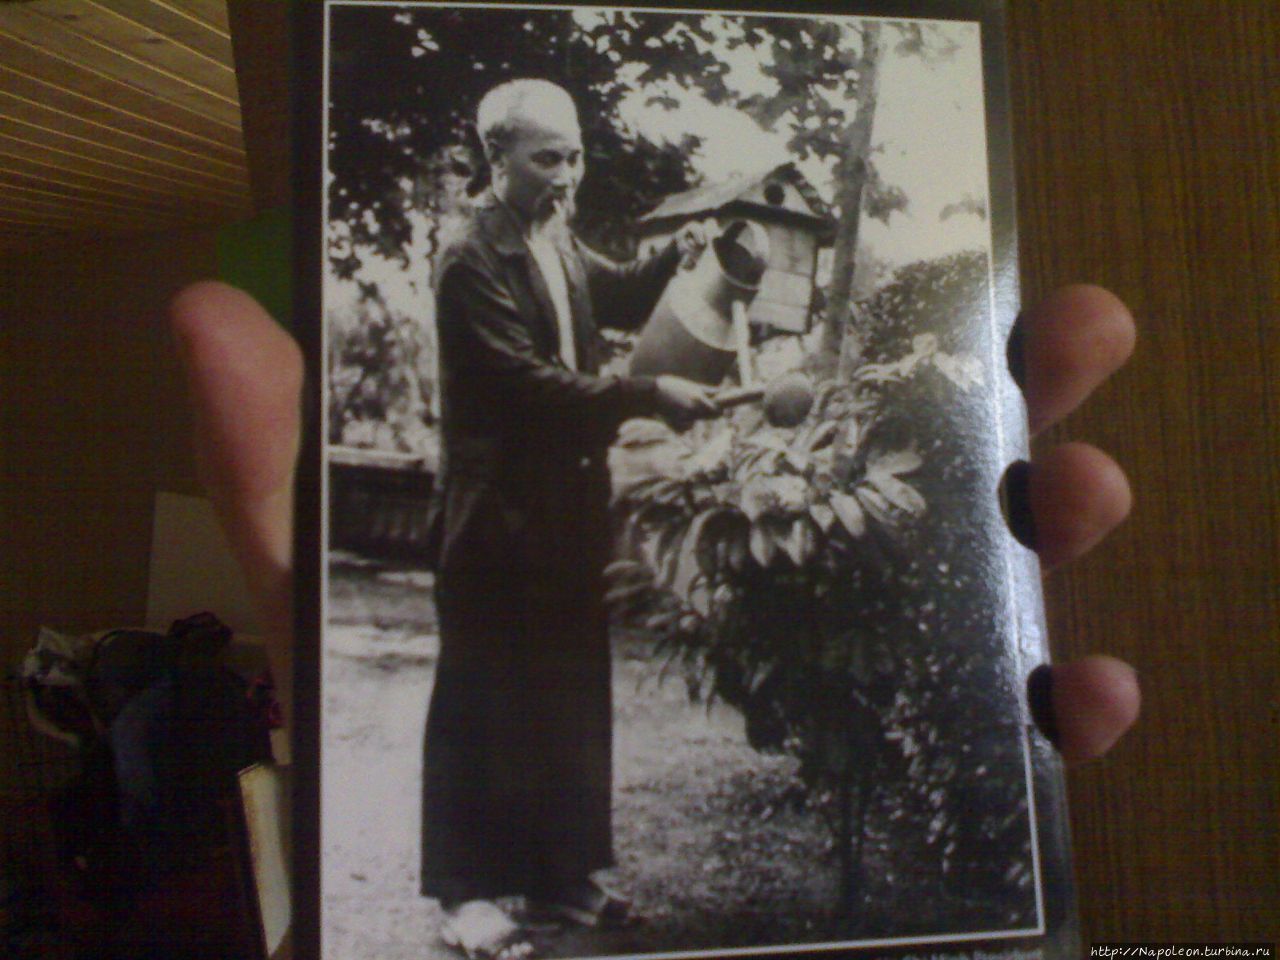 Дядюшка Хо поливает старэппл (vu sua) — дерево с молочными плодами.
Снимок сделан в саду в резиденции Хо Ши Мина в Ханое. Ханой, Вьетнам